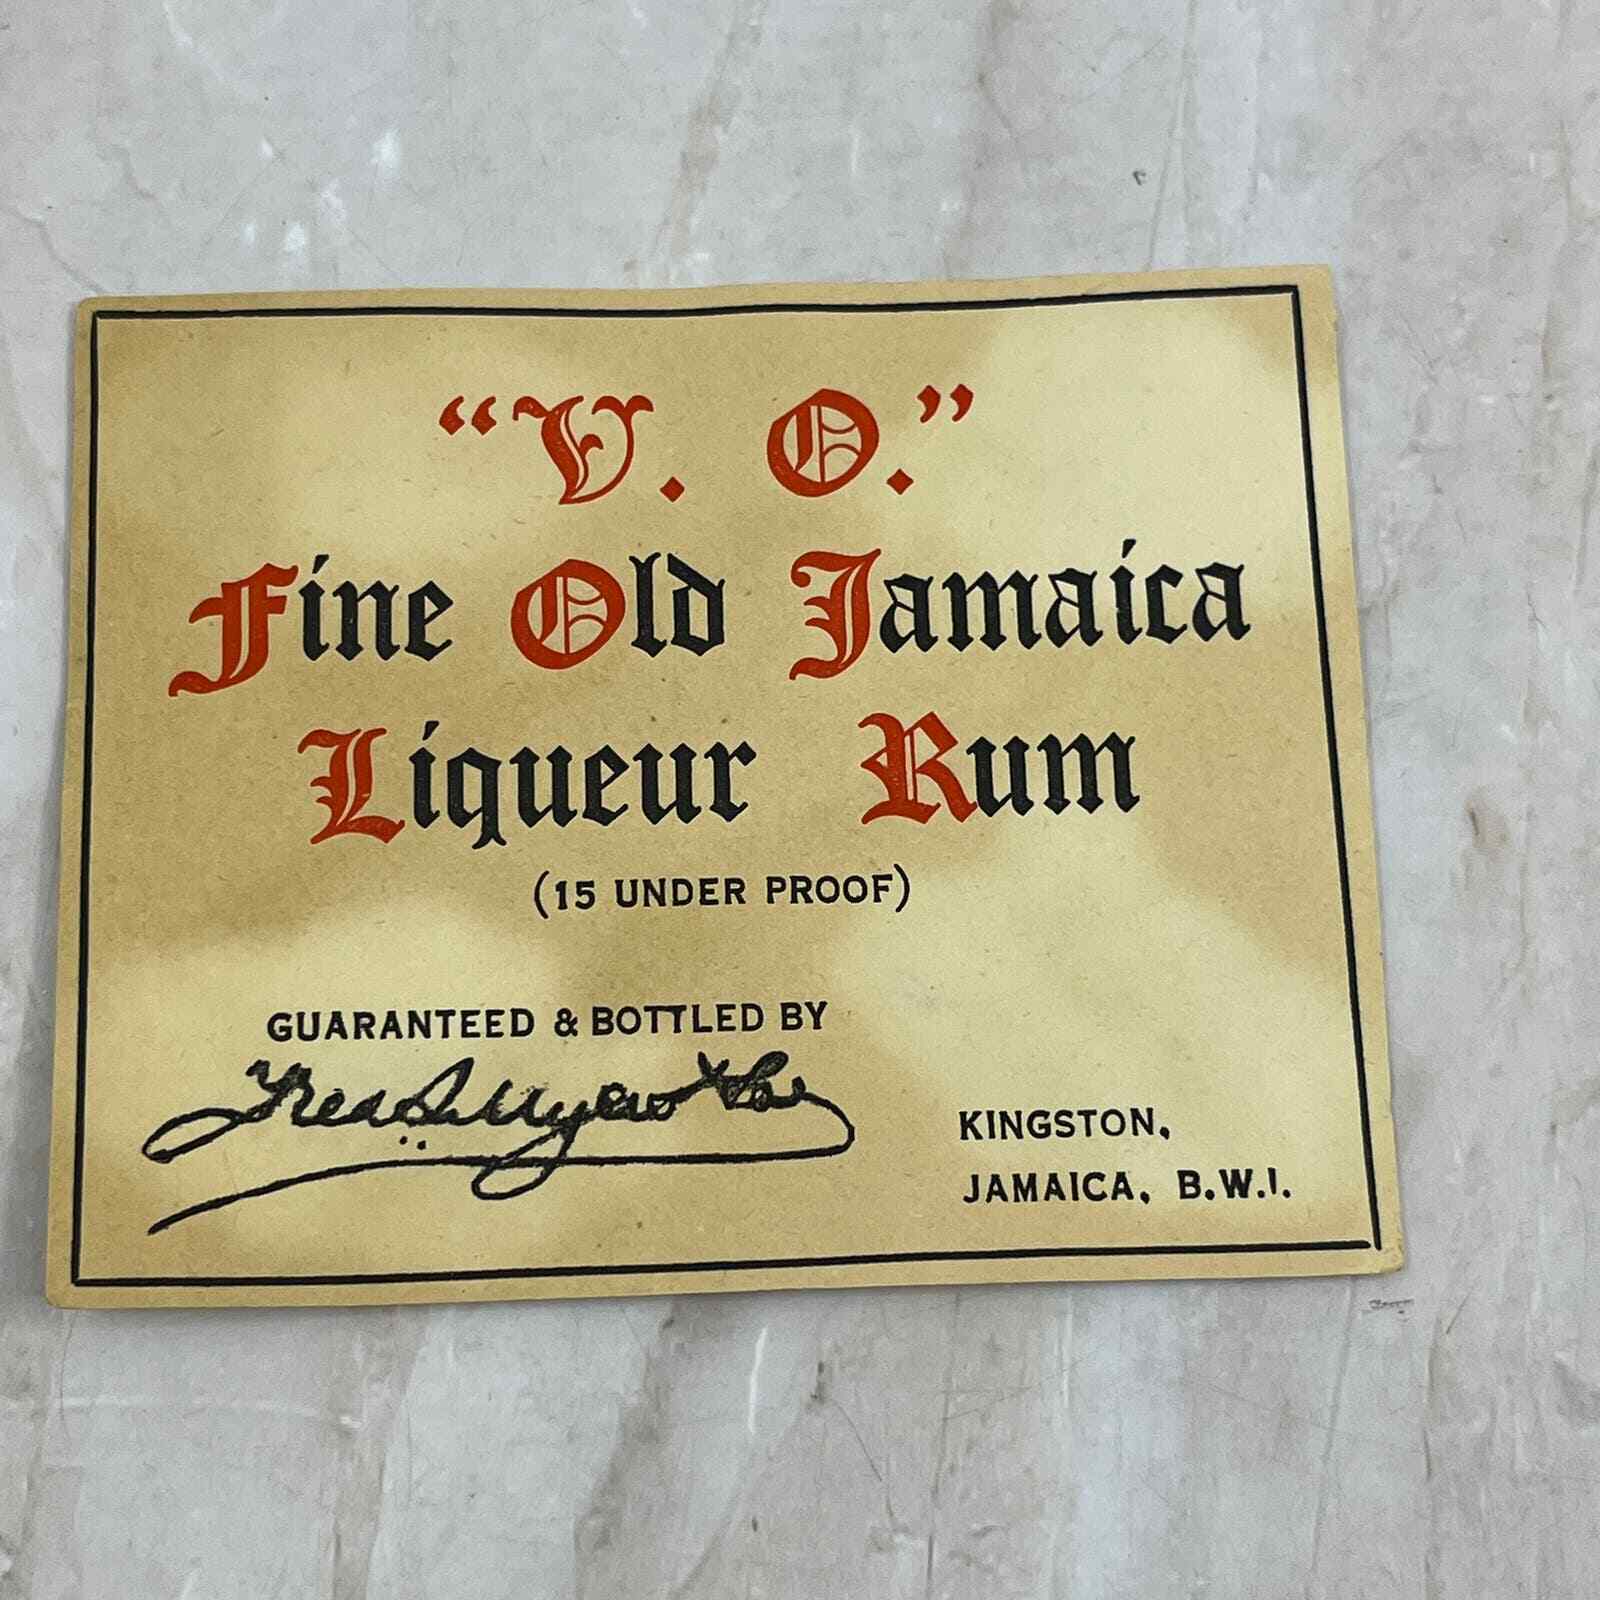 Vintage V.O. Fine Old Jamaica Liqueur Rum Bottle Label Kingston B.W.I. AE5